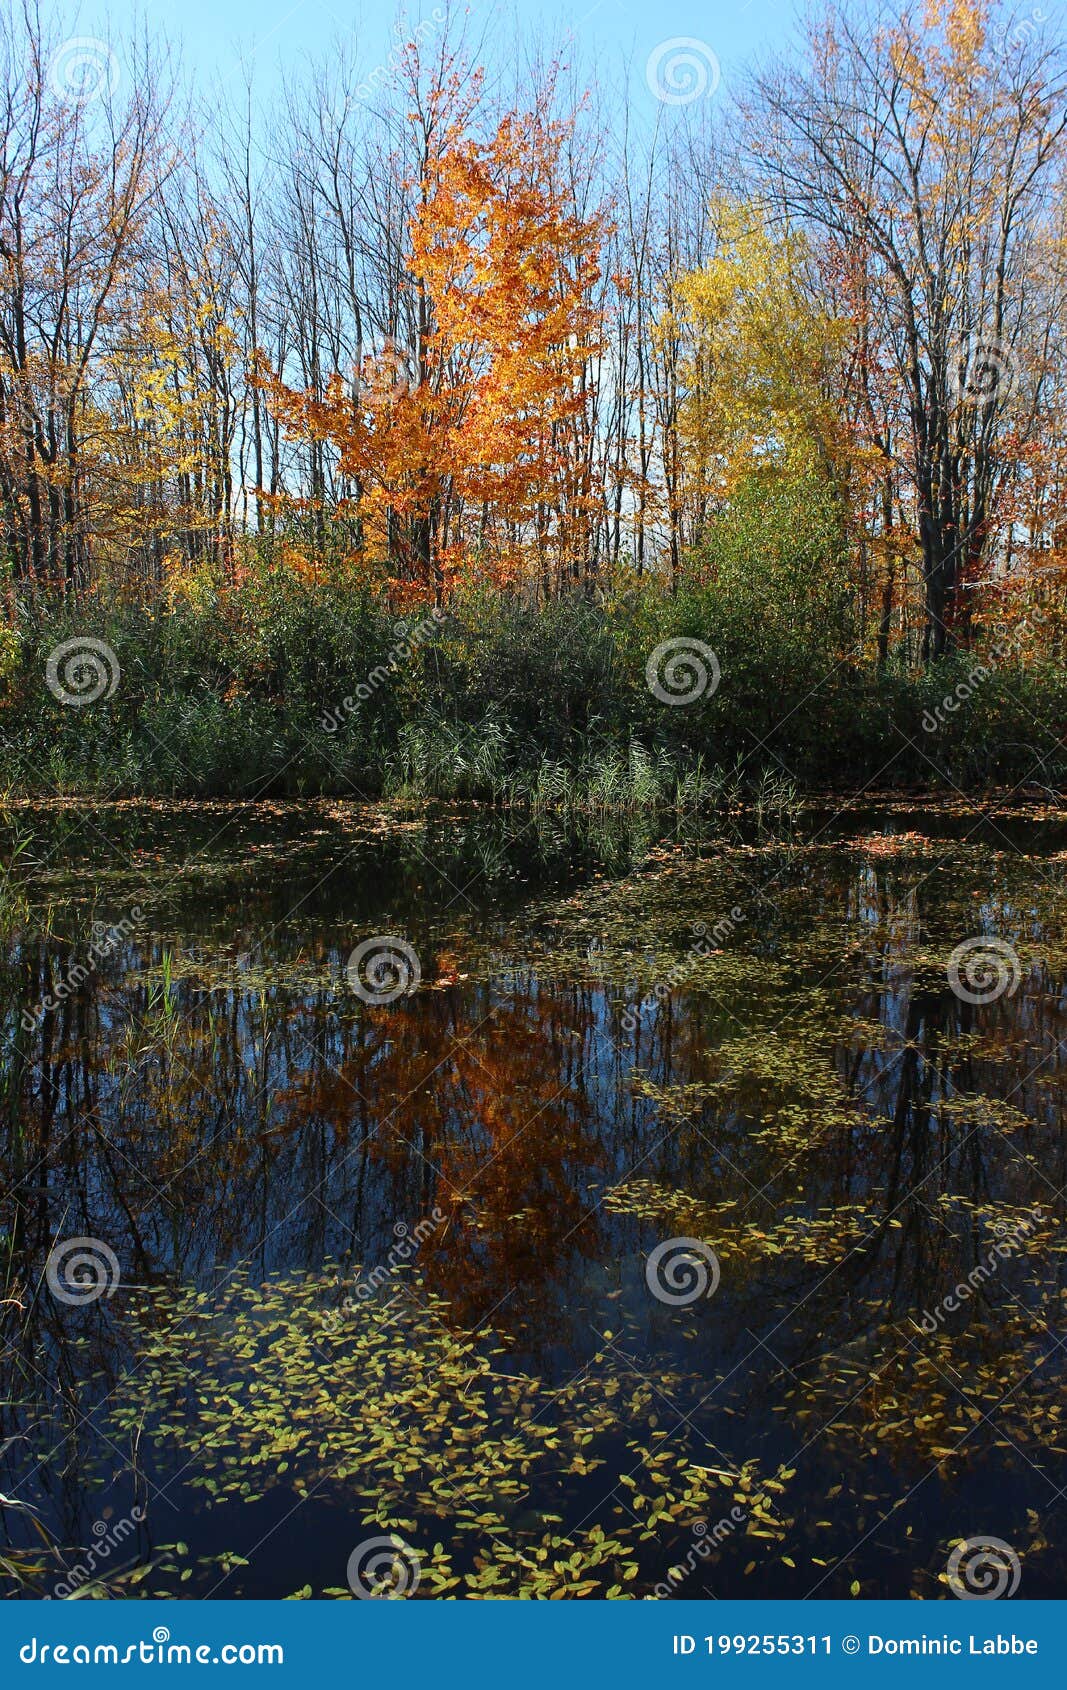 fall foliage reflection